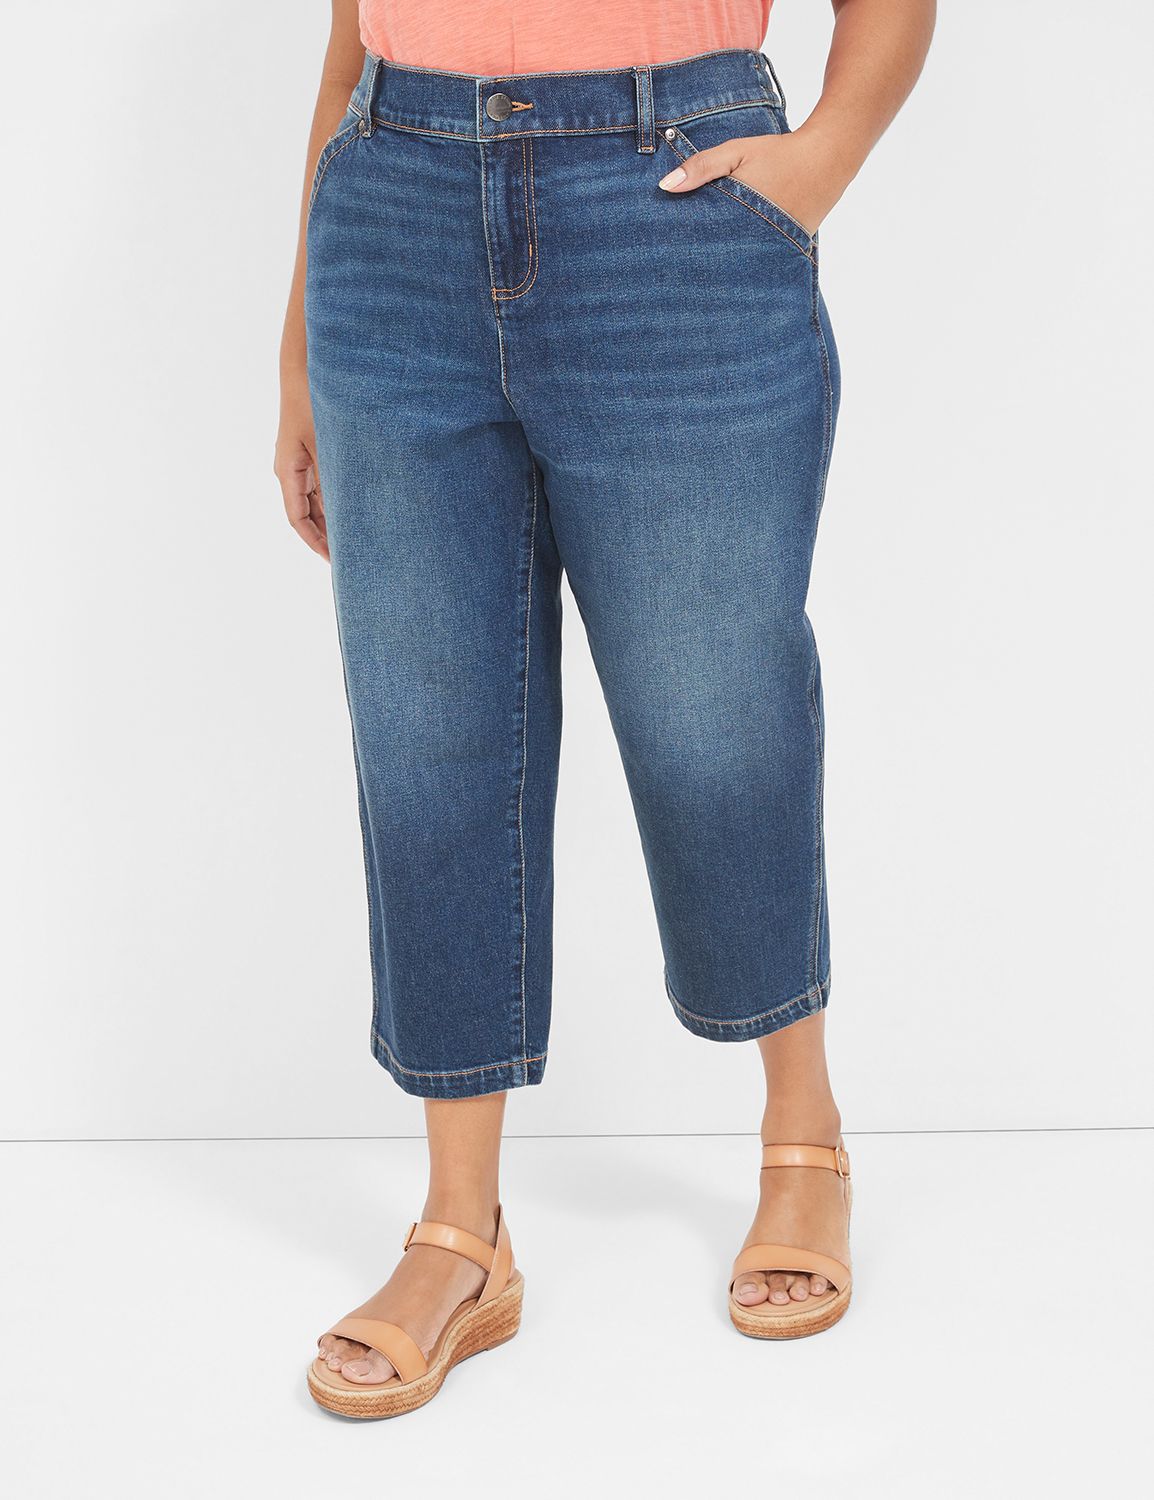 Dressy Trouser Jean